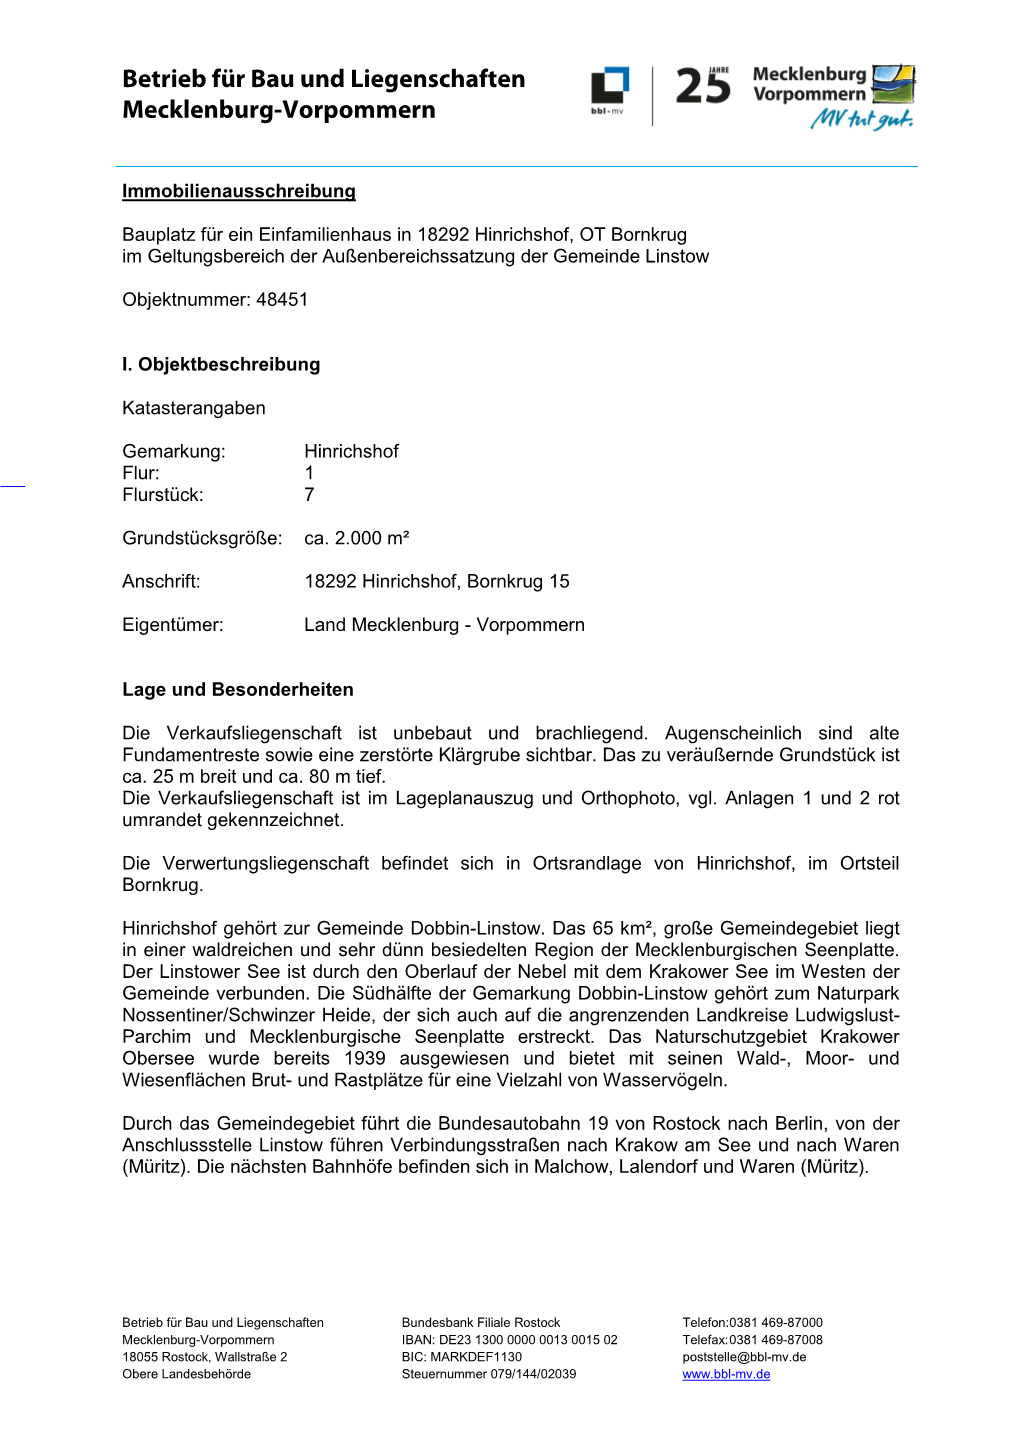 Bbl-Mv.De Obere Landesbehörde Steuernummer 079/144/02039 Grund- Und Bodenbeschreibung